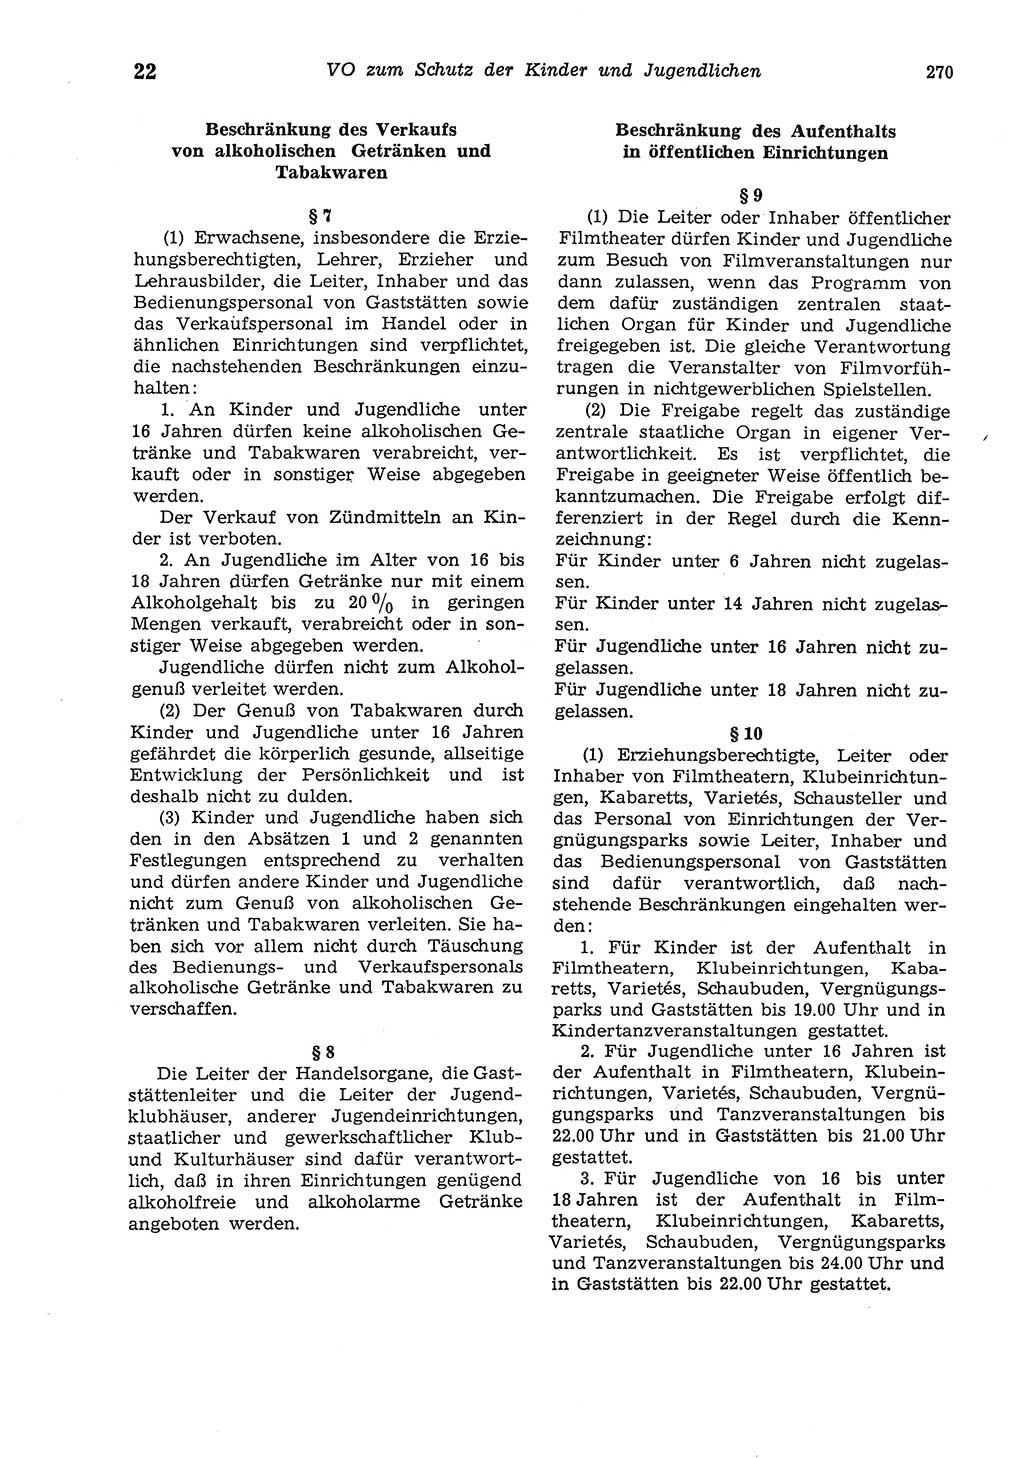 Strafgesetzbuch (StGB) der Deutschen Demokratischen Republik (DDR) und angrenzende Gesetze und Bestimmungen 1975, Seite 270 (StGB DDR Ges. Best. 1975, S. 270)